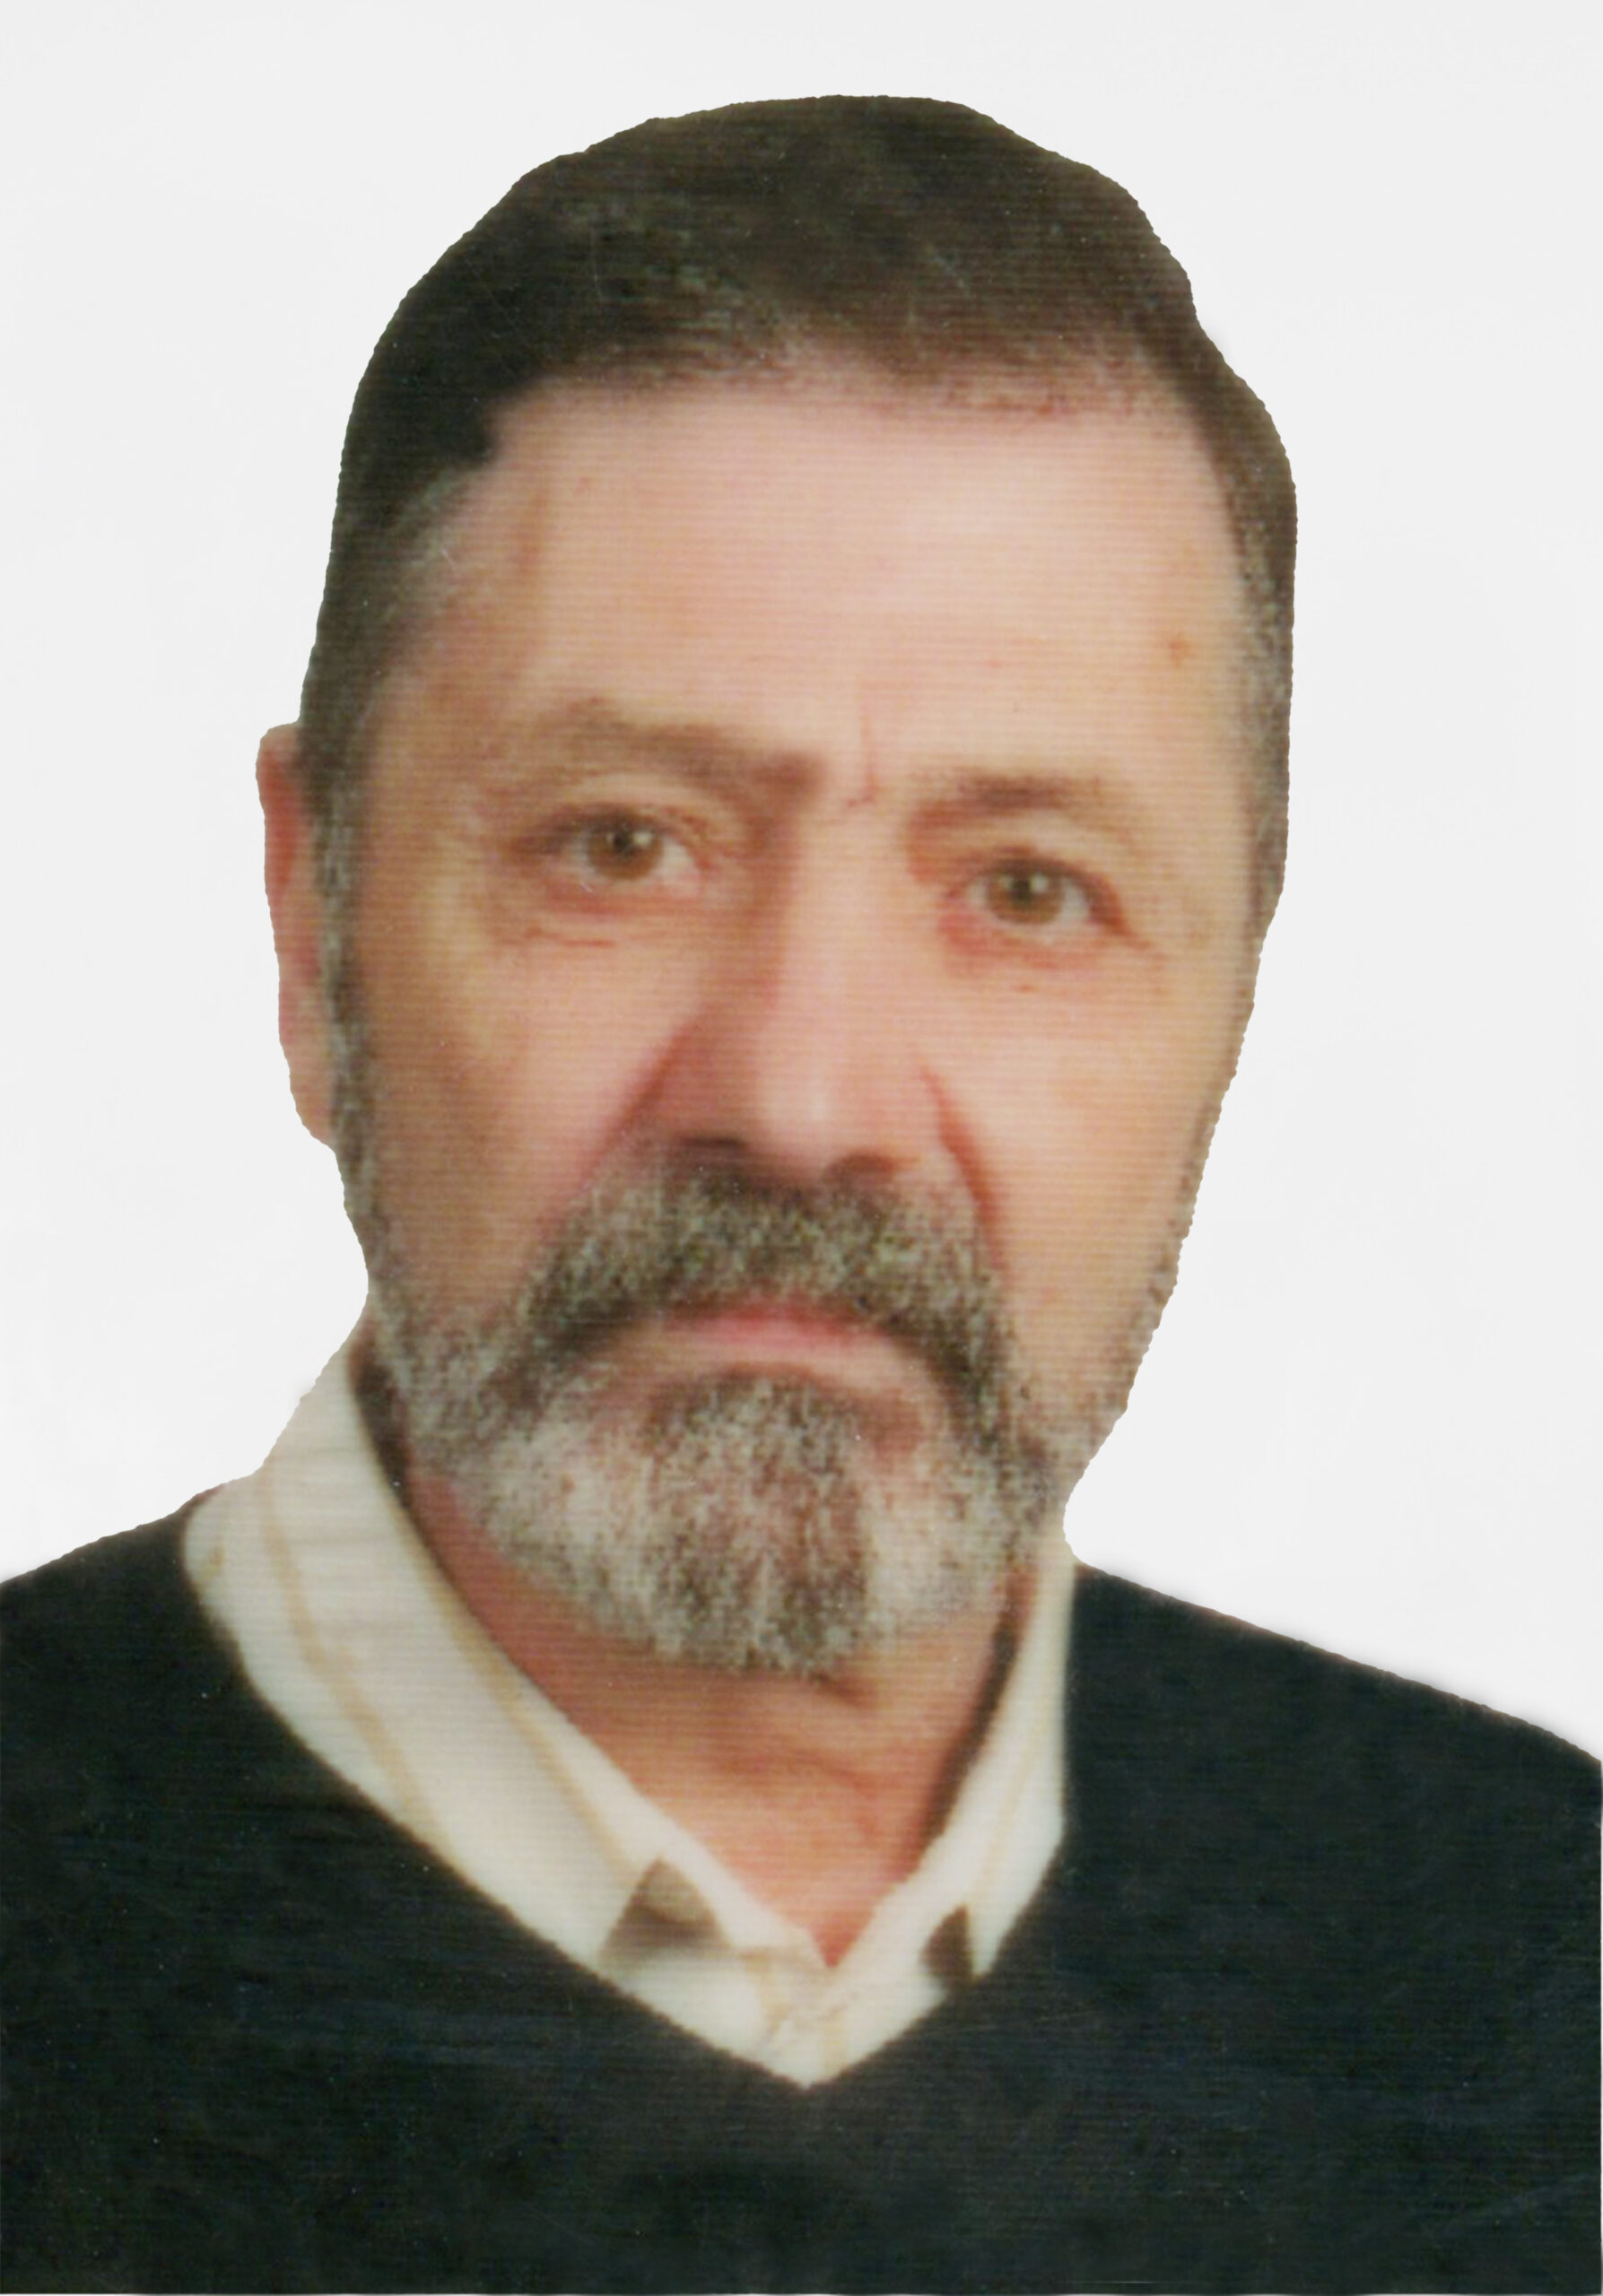 Manuel Francisco Fernandes da Silva